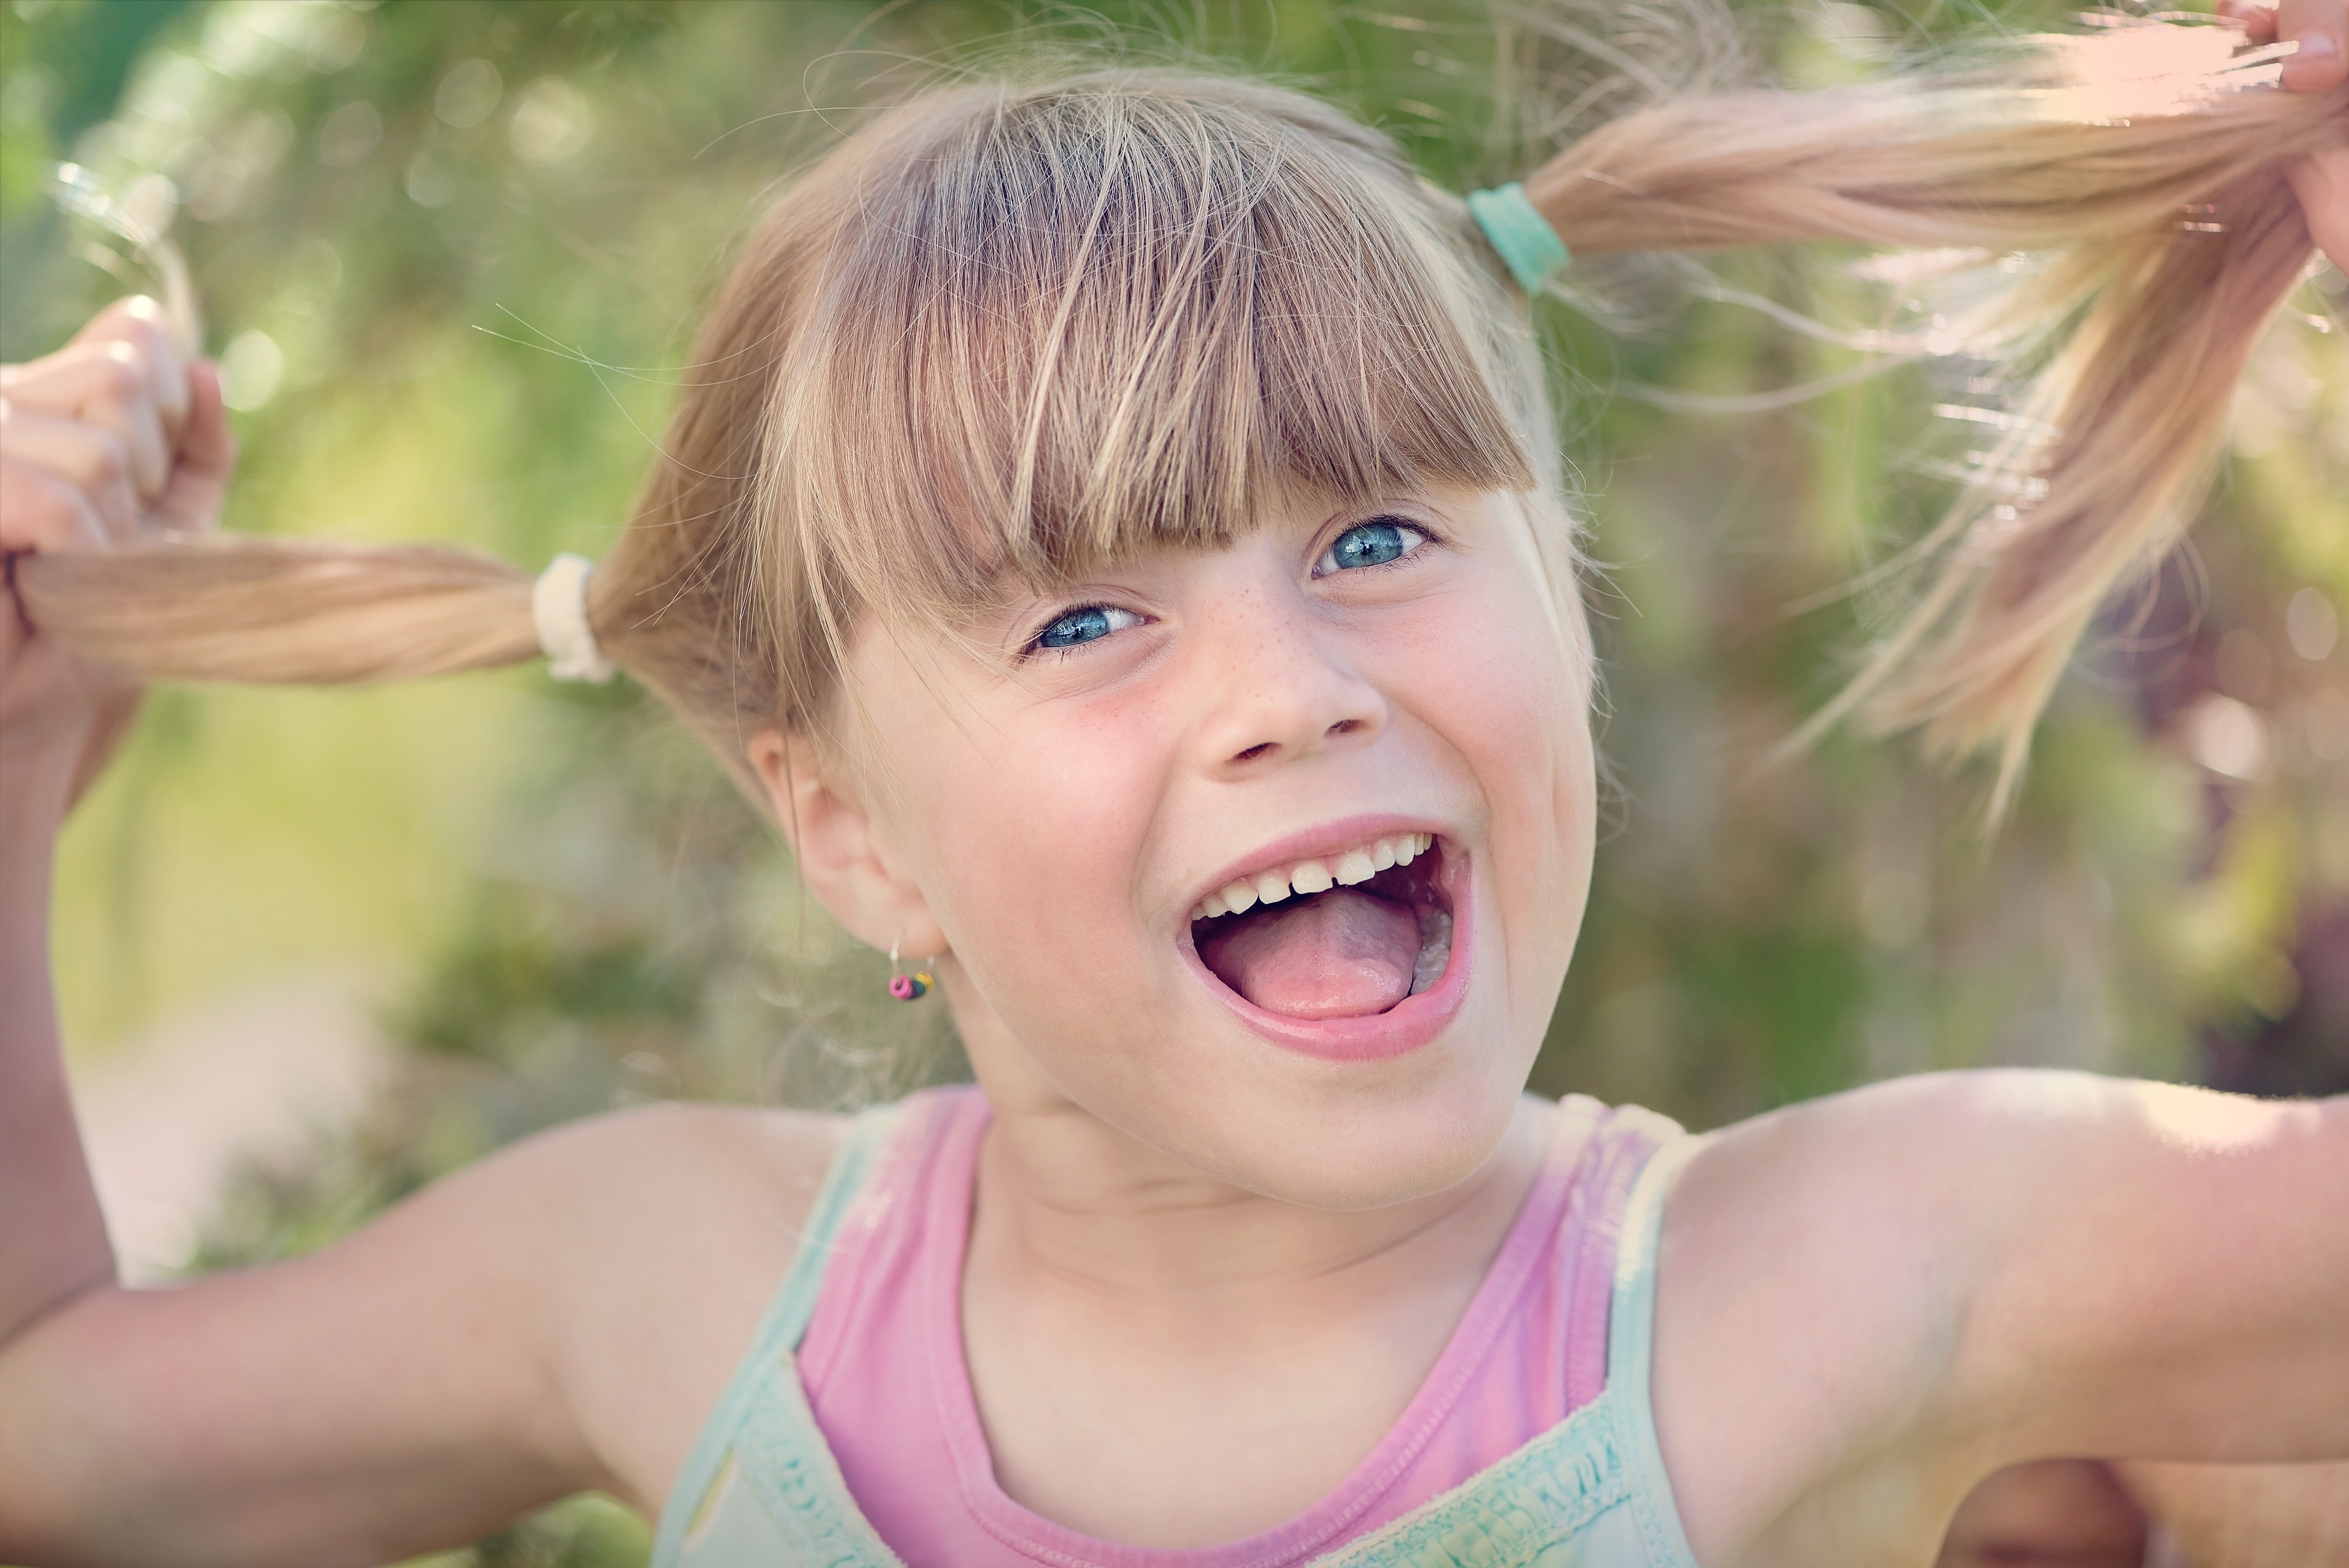 Улыбаться и смеяться чаще. Радостное лицо ребенка. Счастливые эмоции детей. Радостные эмоции детей. Девочка смеется.